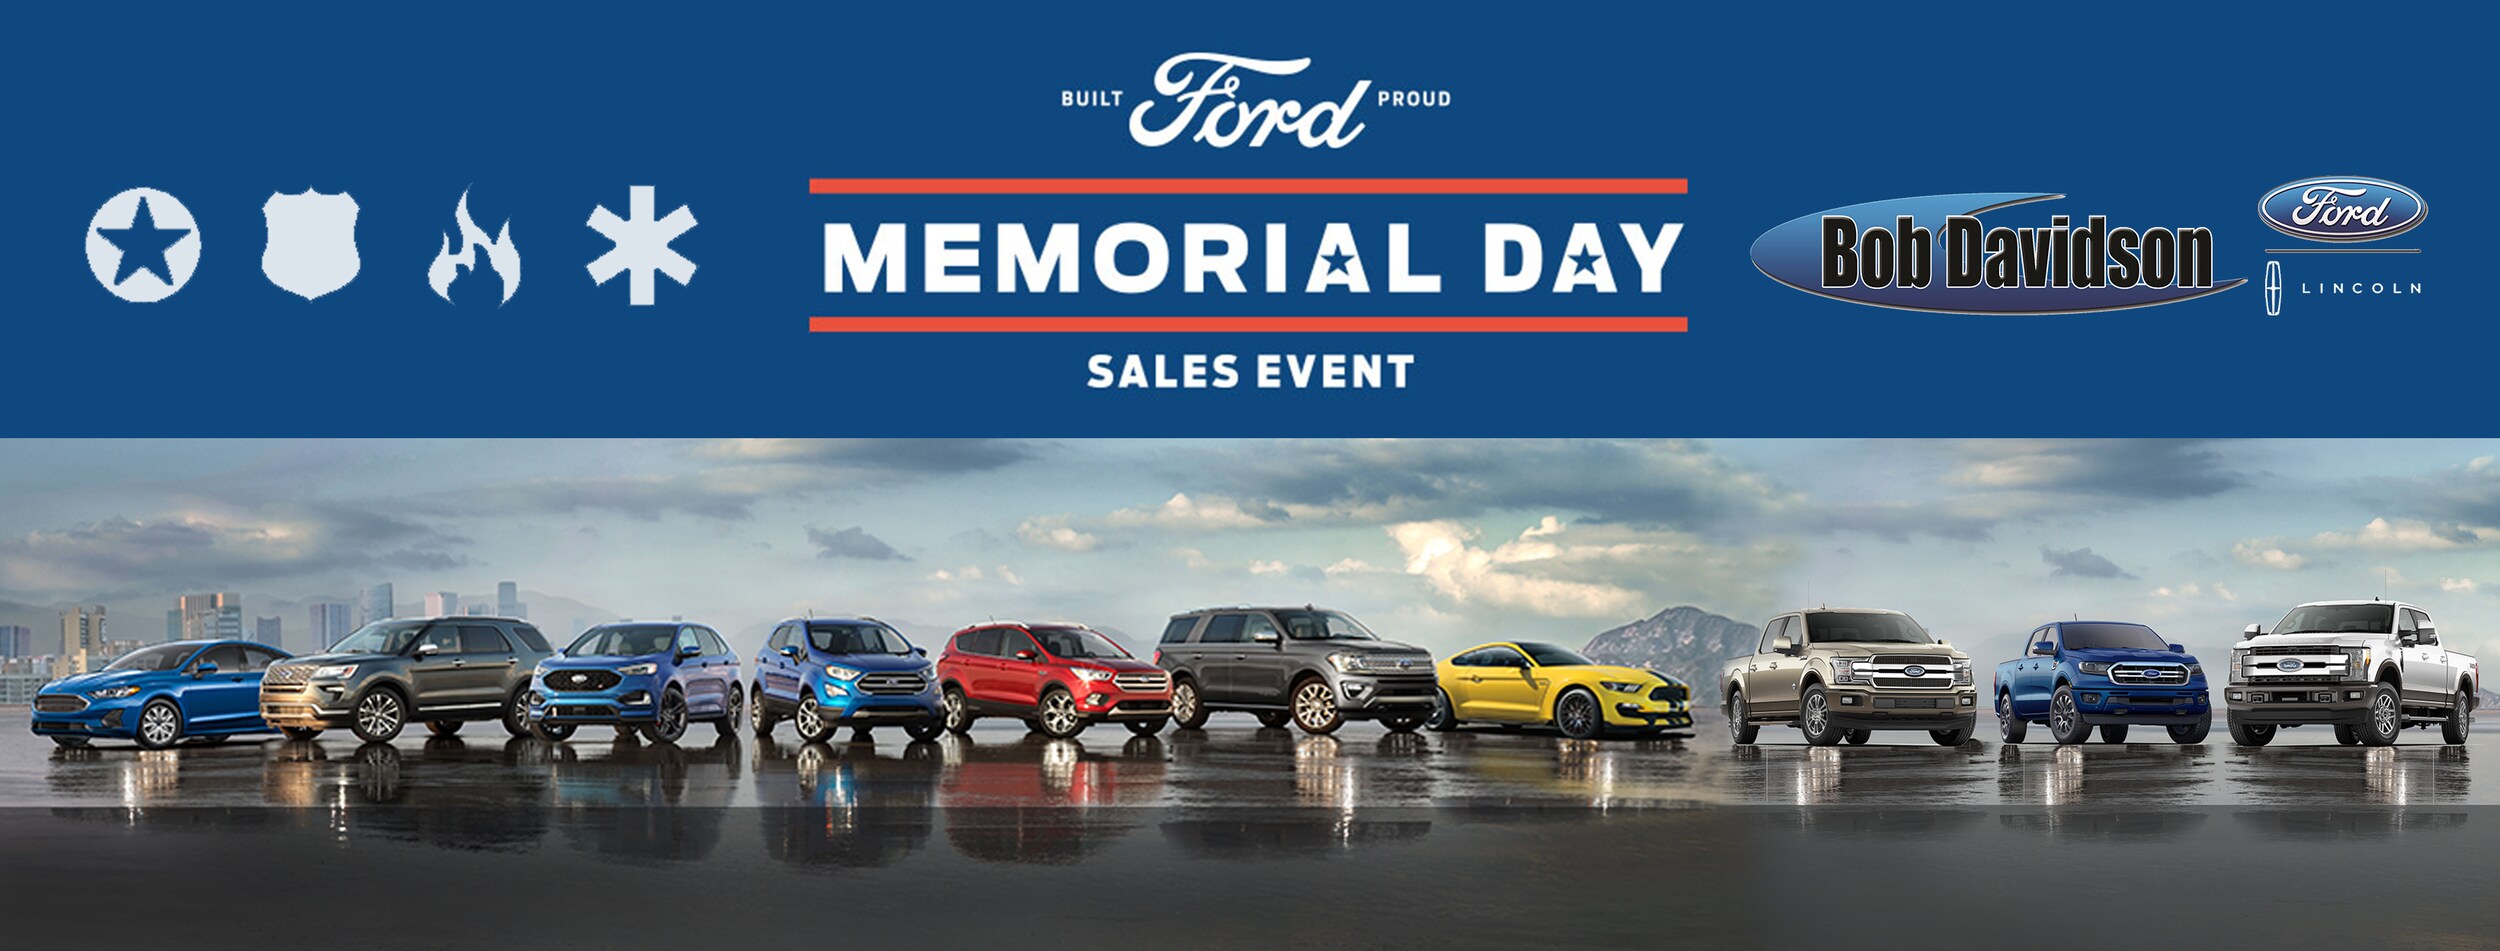 Memorial Day SUV Specials Bob Davidson Ford Lincoln